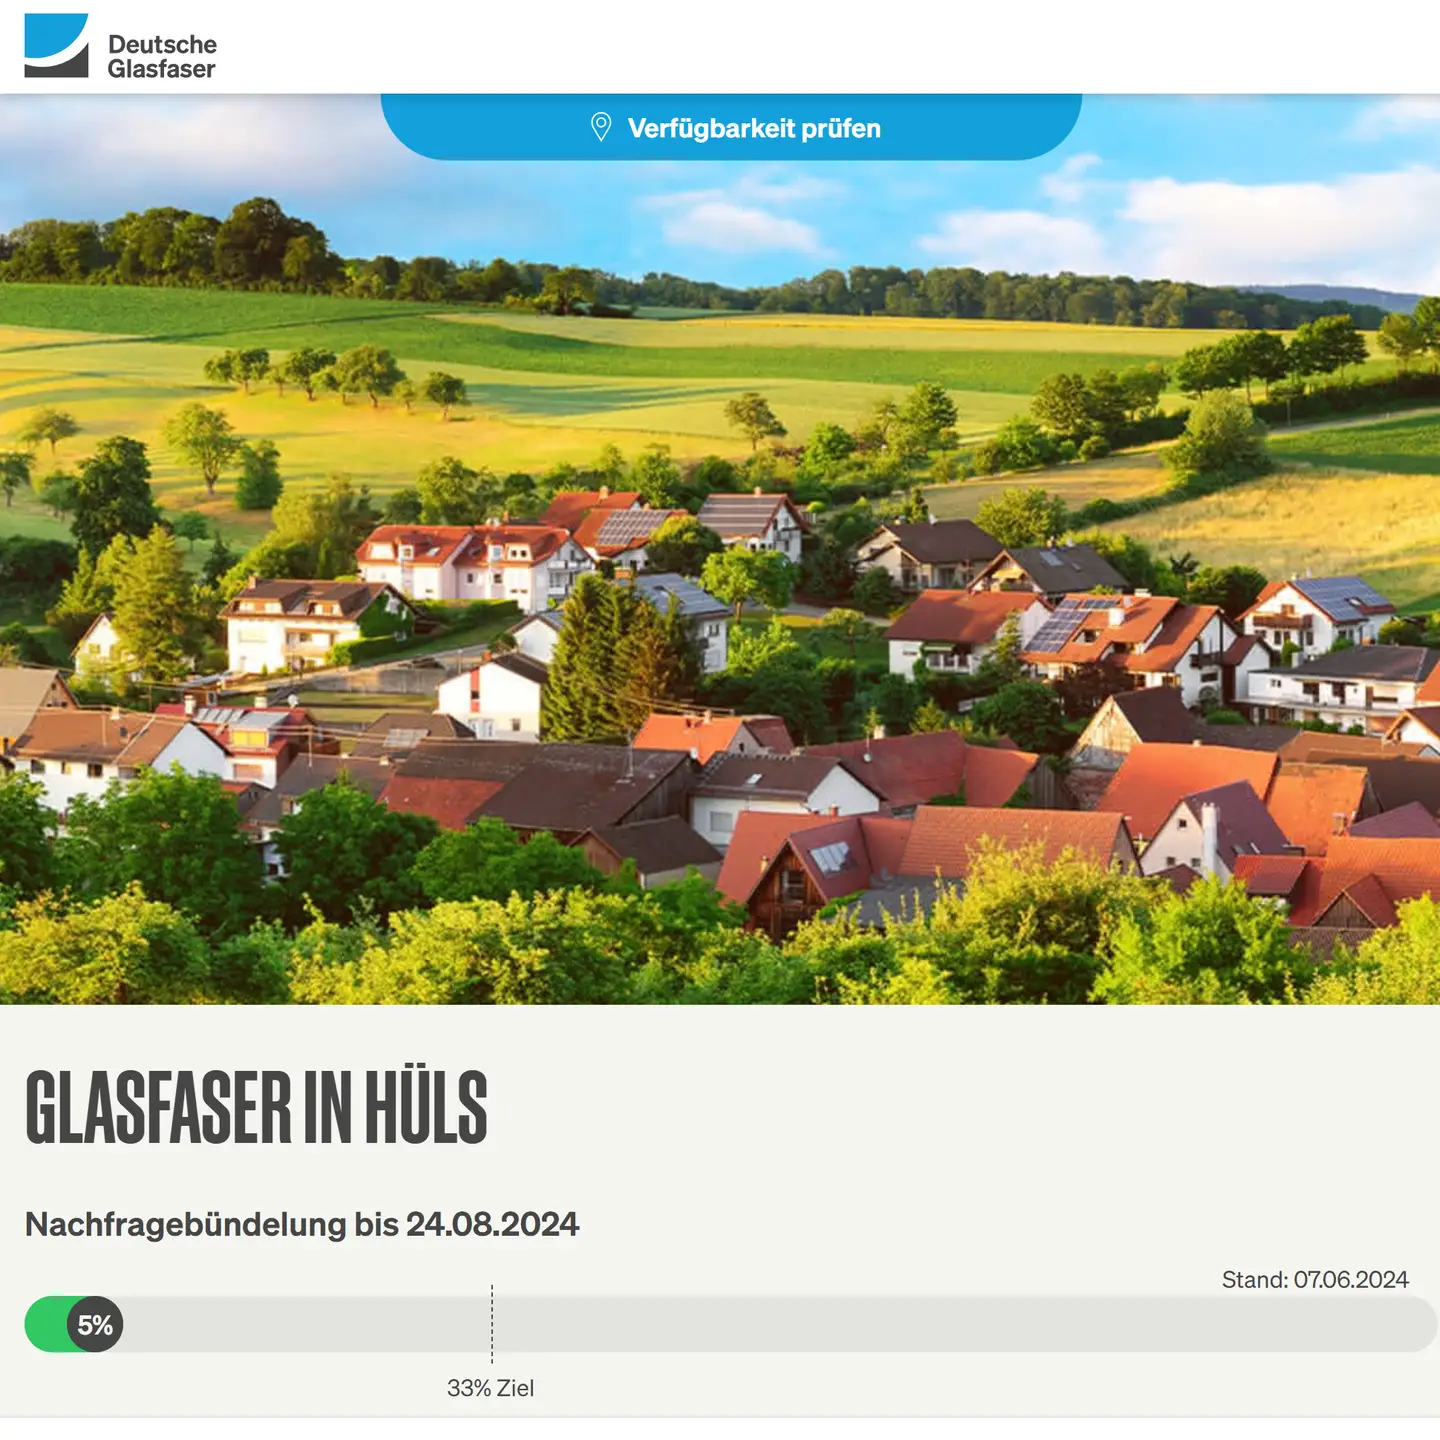 Screenshot von "Deutsche Glasfaser", oben DG Logo, ein Landschaftsbild, Schriftzüge "Glasfaser in Krefeld-Hüls", Nachfragebündelung bis 24.8.2024, Anzeige des aktuellen Stand